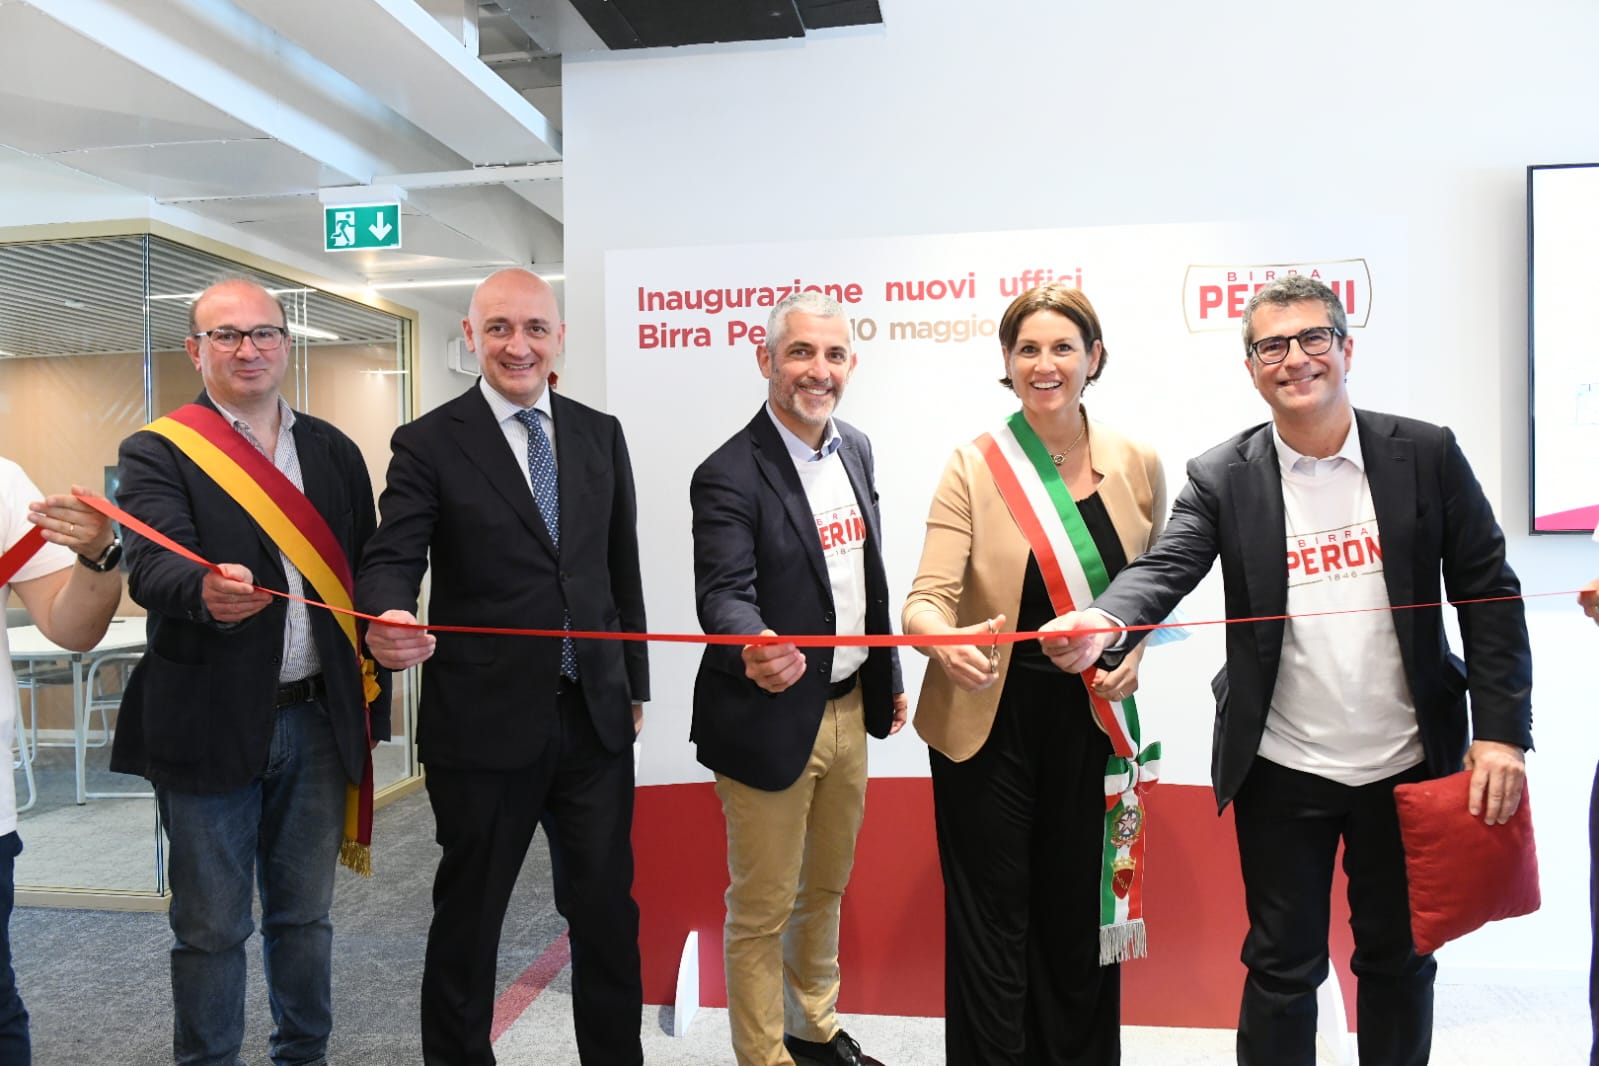 Birra Peroni inaugura i suoi nuovi uffici a Roma